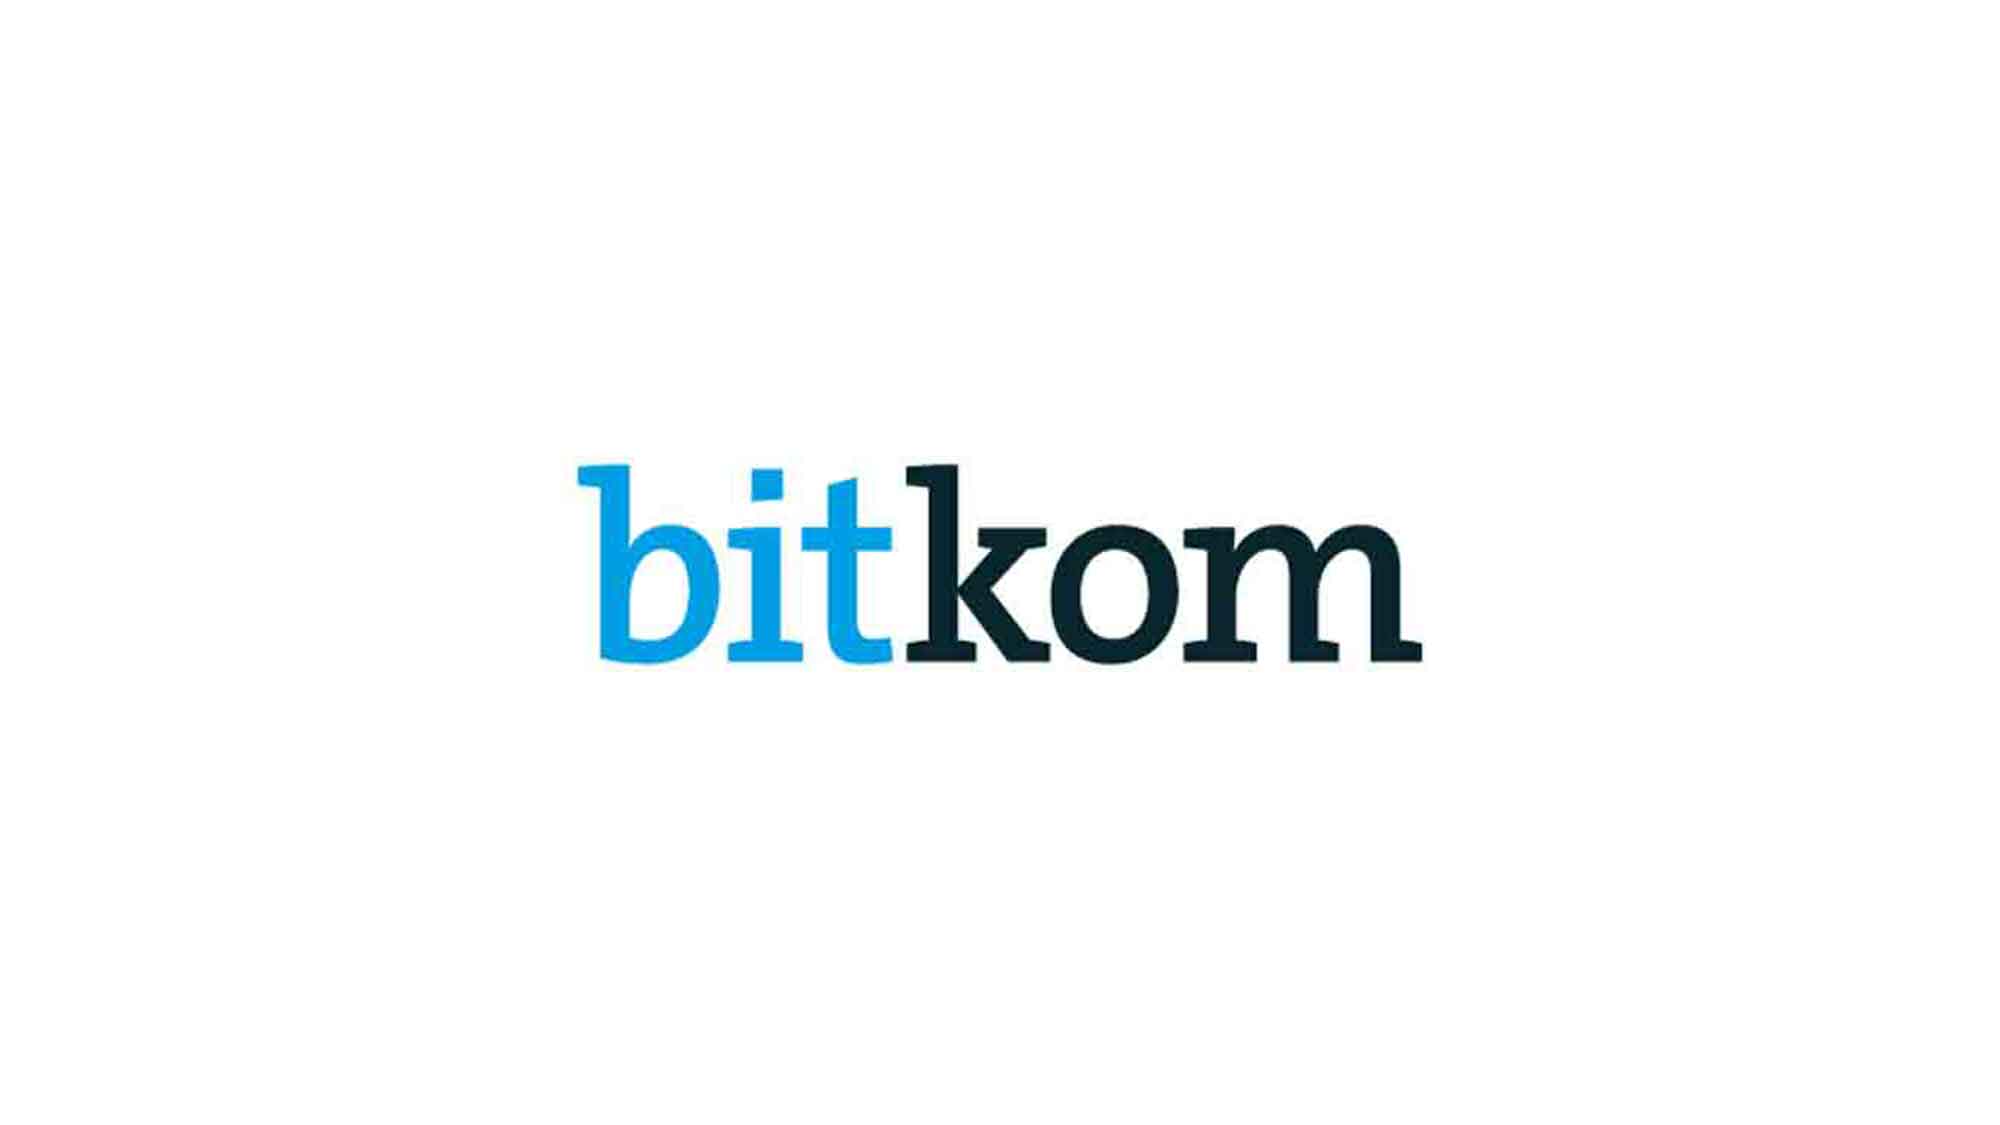 Bitkom: Mobilität – 4 von 10 nutzen Sharing Angebote